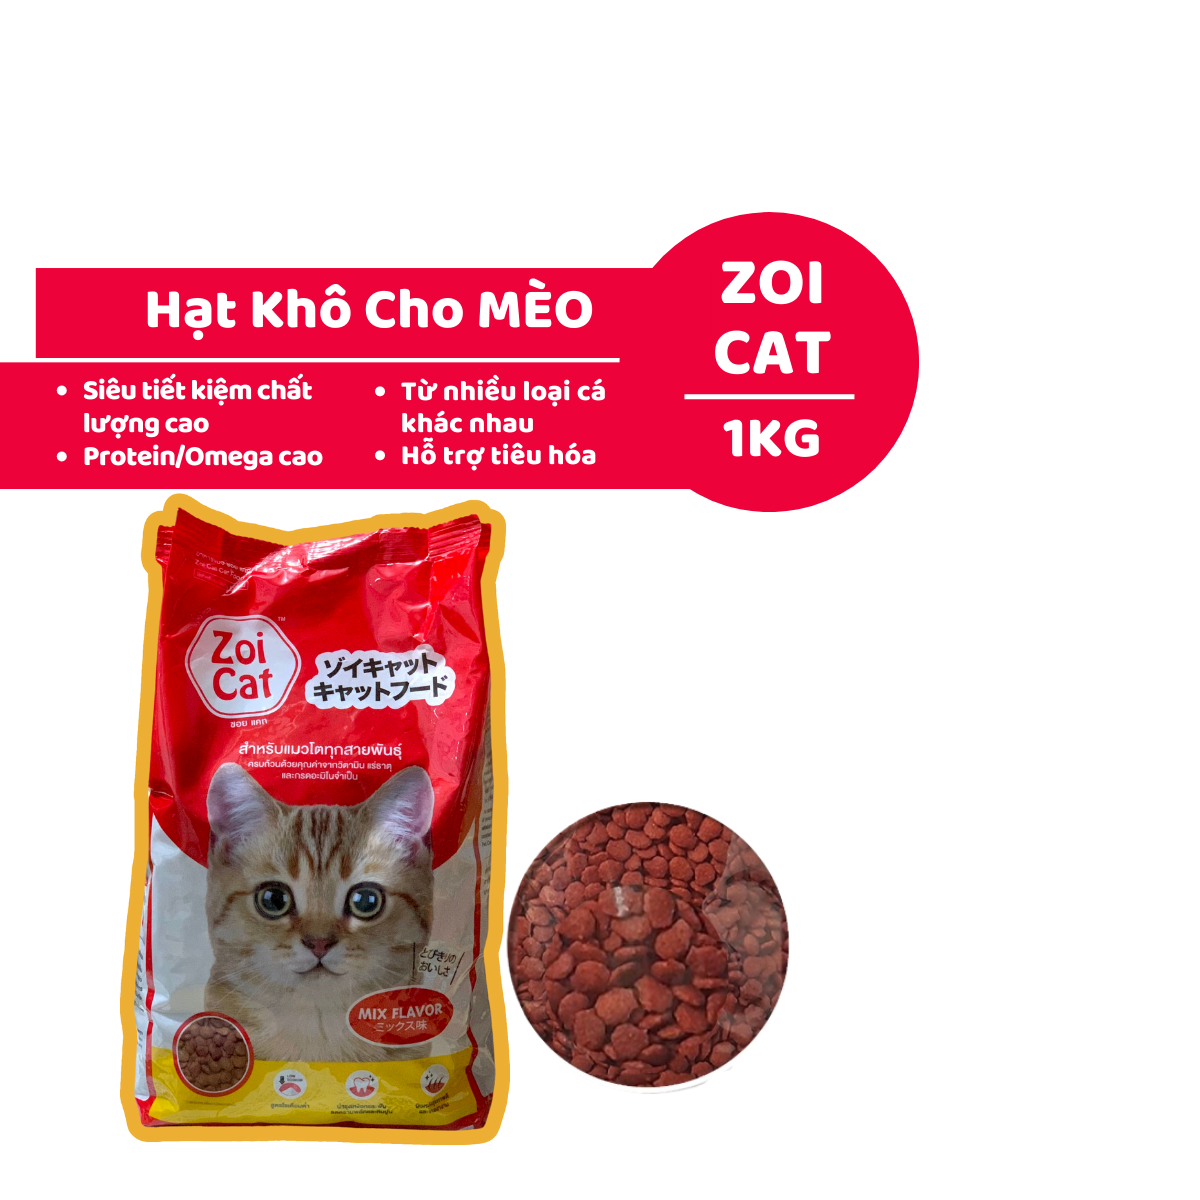 Hạt Mèo ZOI CAT 1kg, Thức Ăn Cho Mèo Giá Rẻ